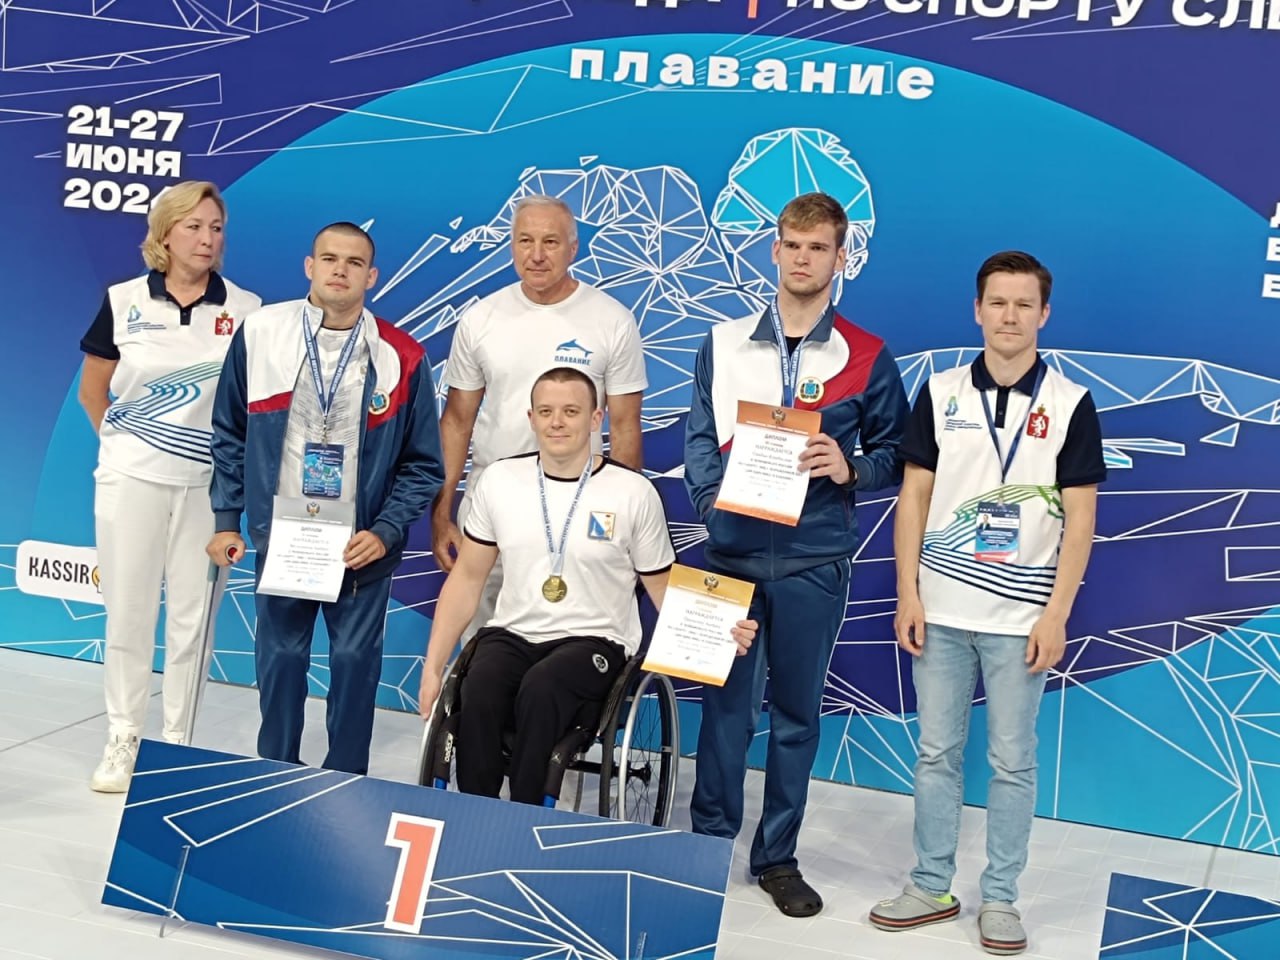 Саратовские паралимпийцы завоевали 36 медалей на чемпионате и Кубке России по плаванию